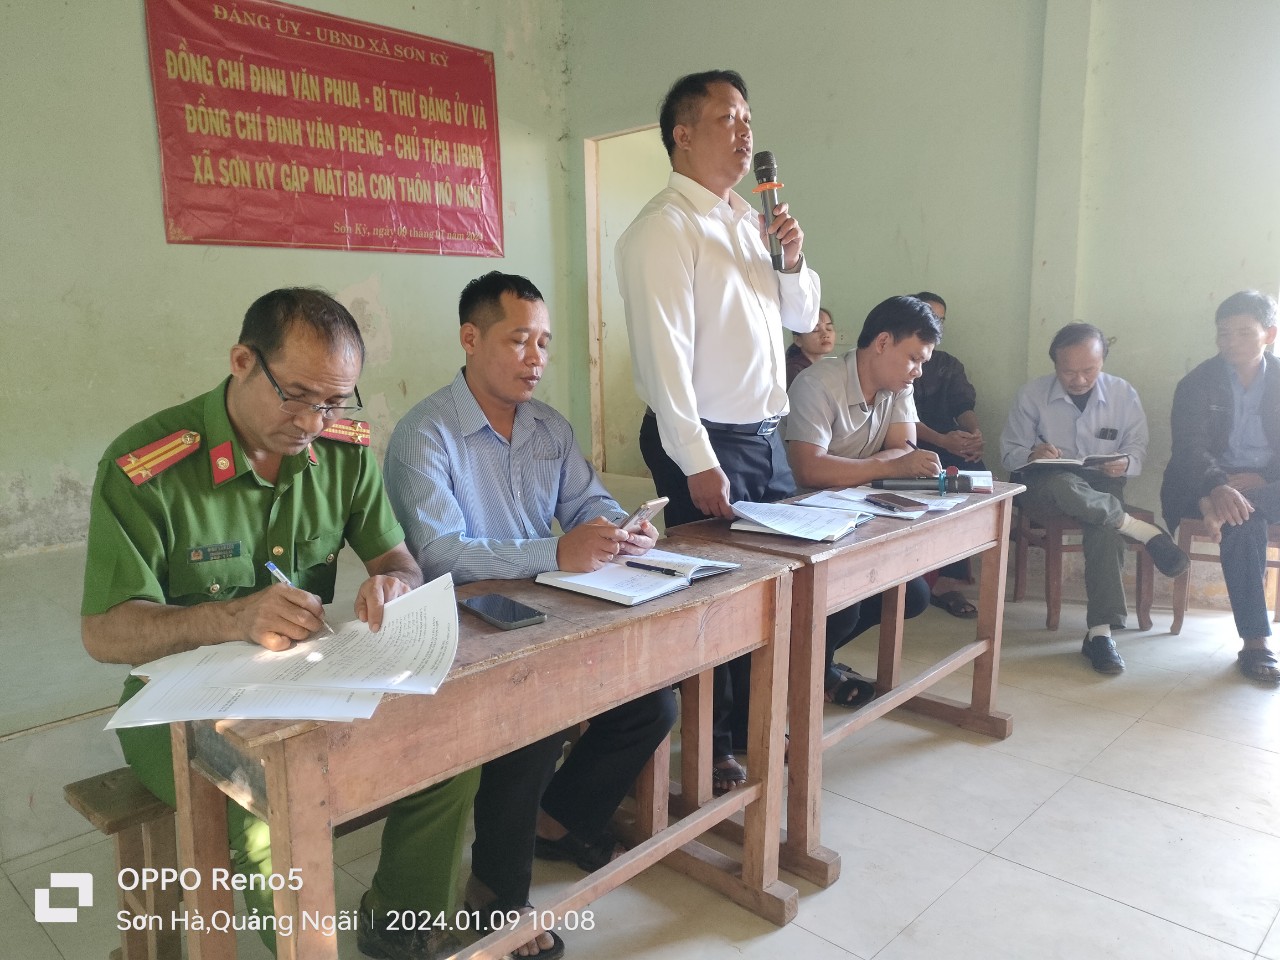 Đồng chí Đinh Văn Phèng - Chủ tịch UBND xã Sơn Kỳ gặp gỡ nhân dân thôn Mô Níc